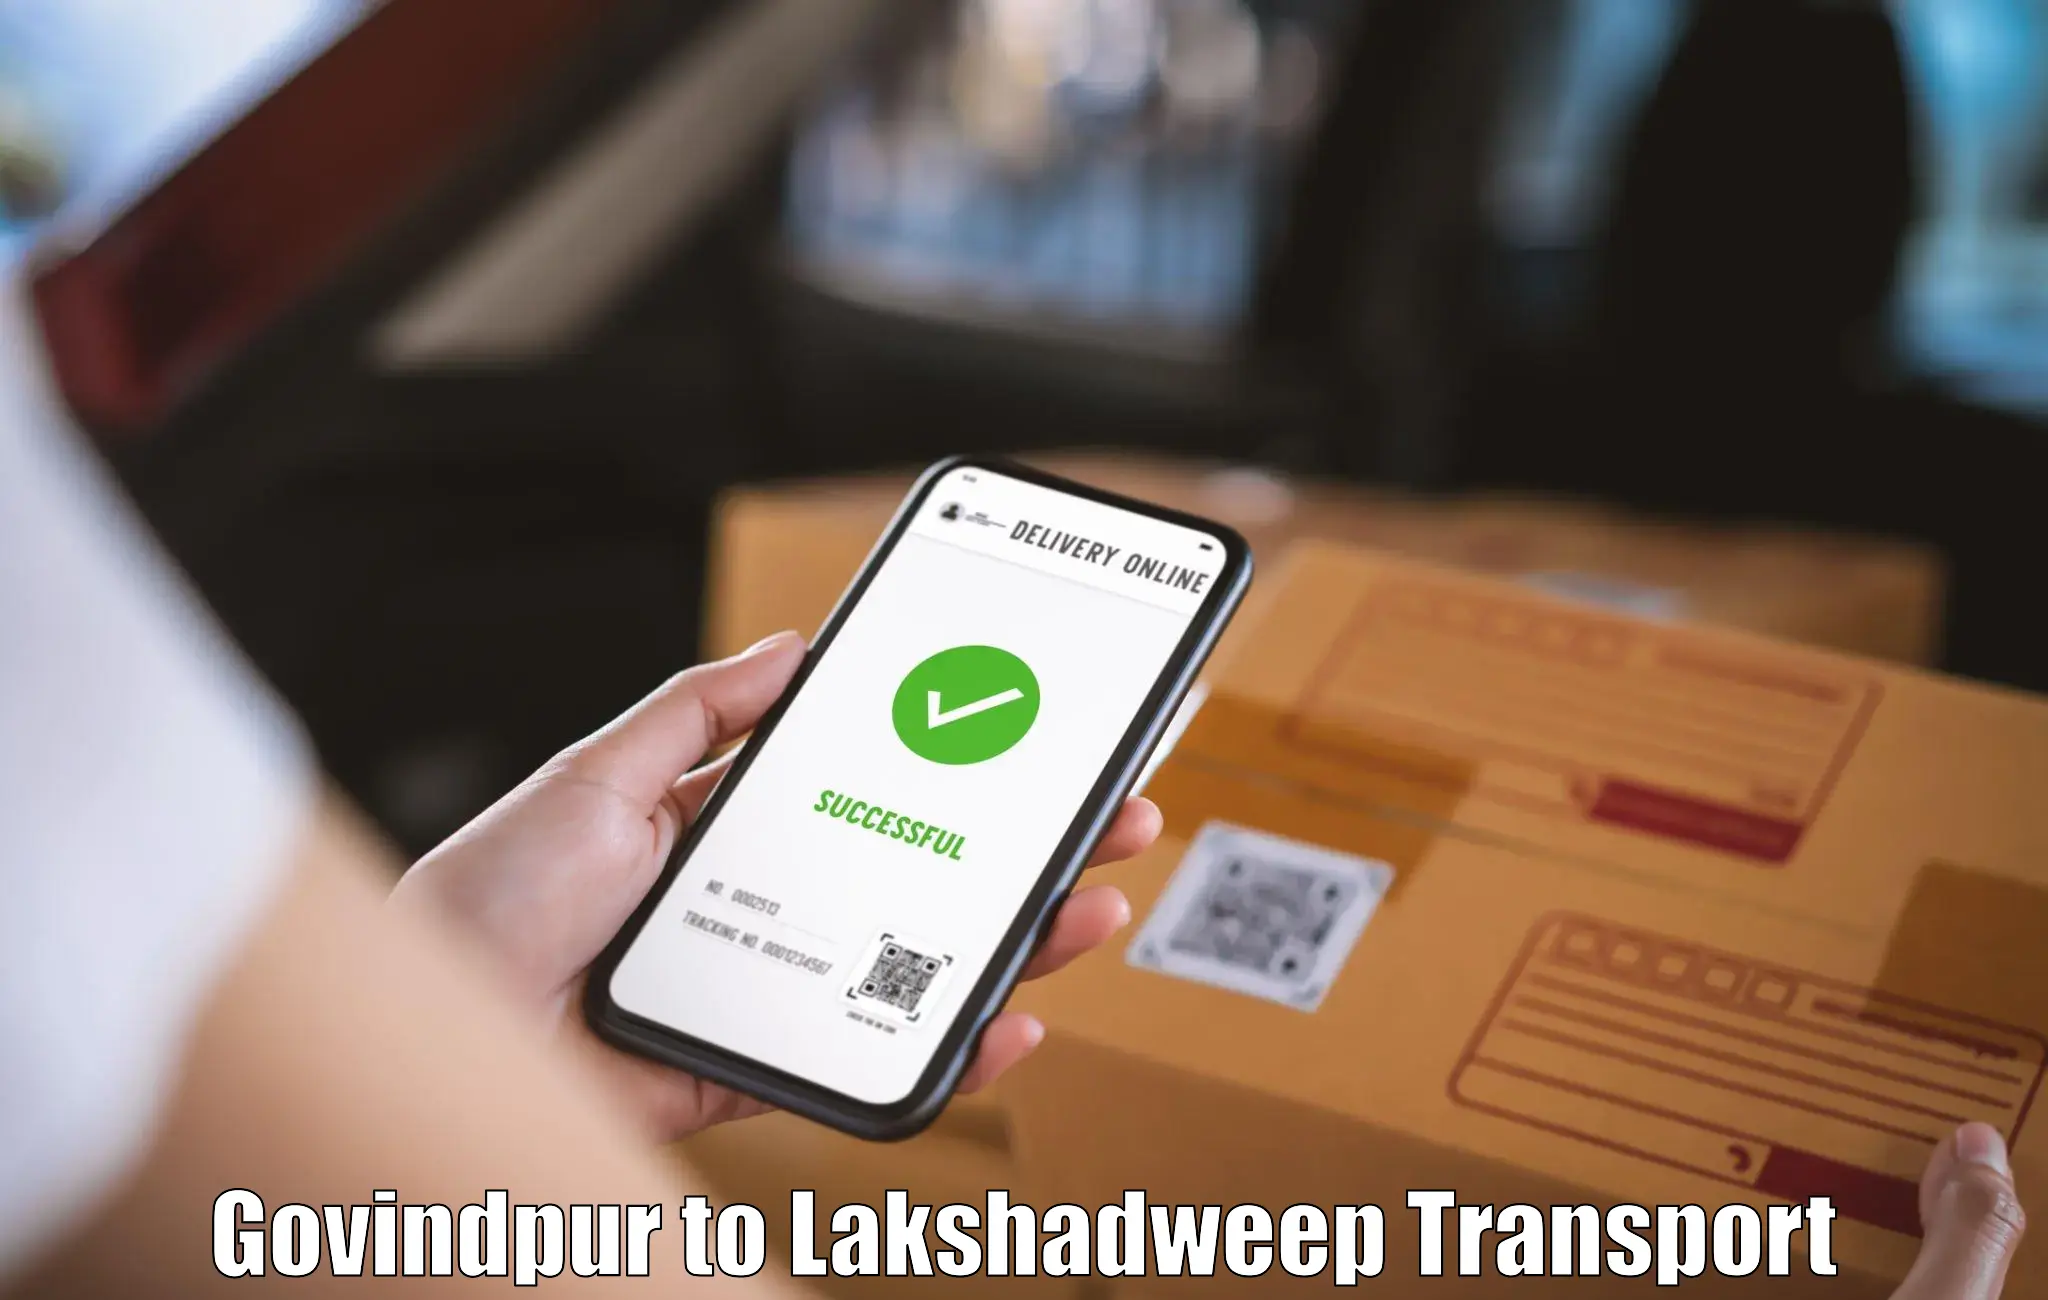 Commercial transport service Govindpur to Lakshadweep